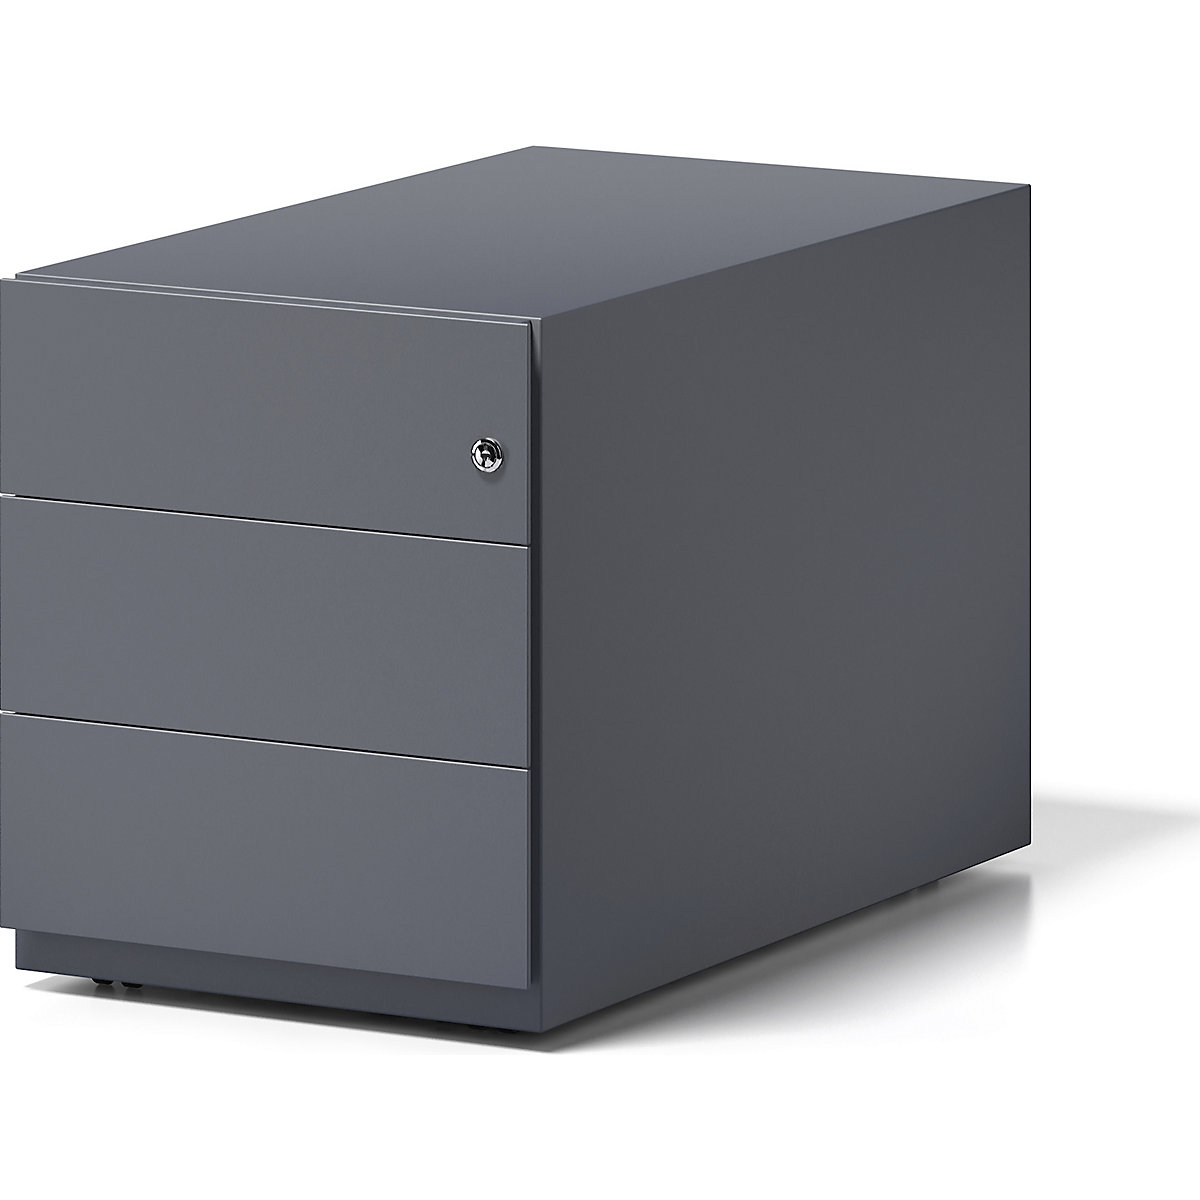 Kontener na kółkach Note™, z 3 szufladami uniwersalnymi – BISLEY, wys. x szer. x głęb. 495 x 420 x 775 mm, z listwą uchwytową, antracytowo-szary-5